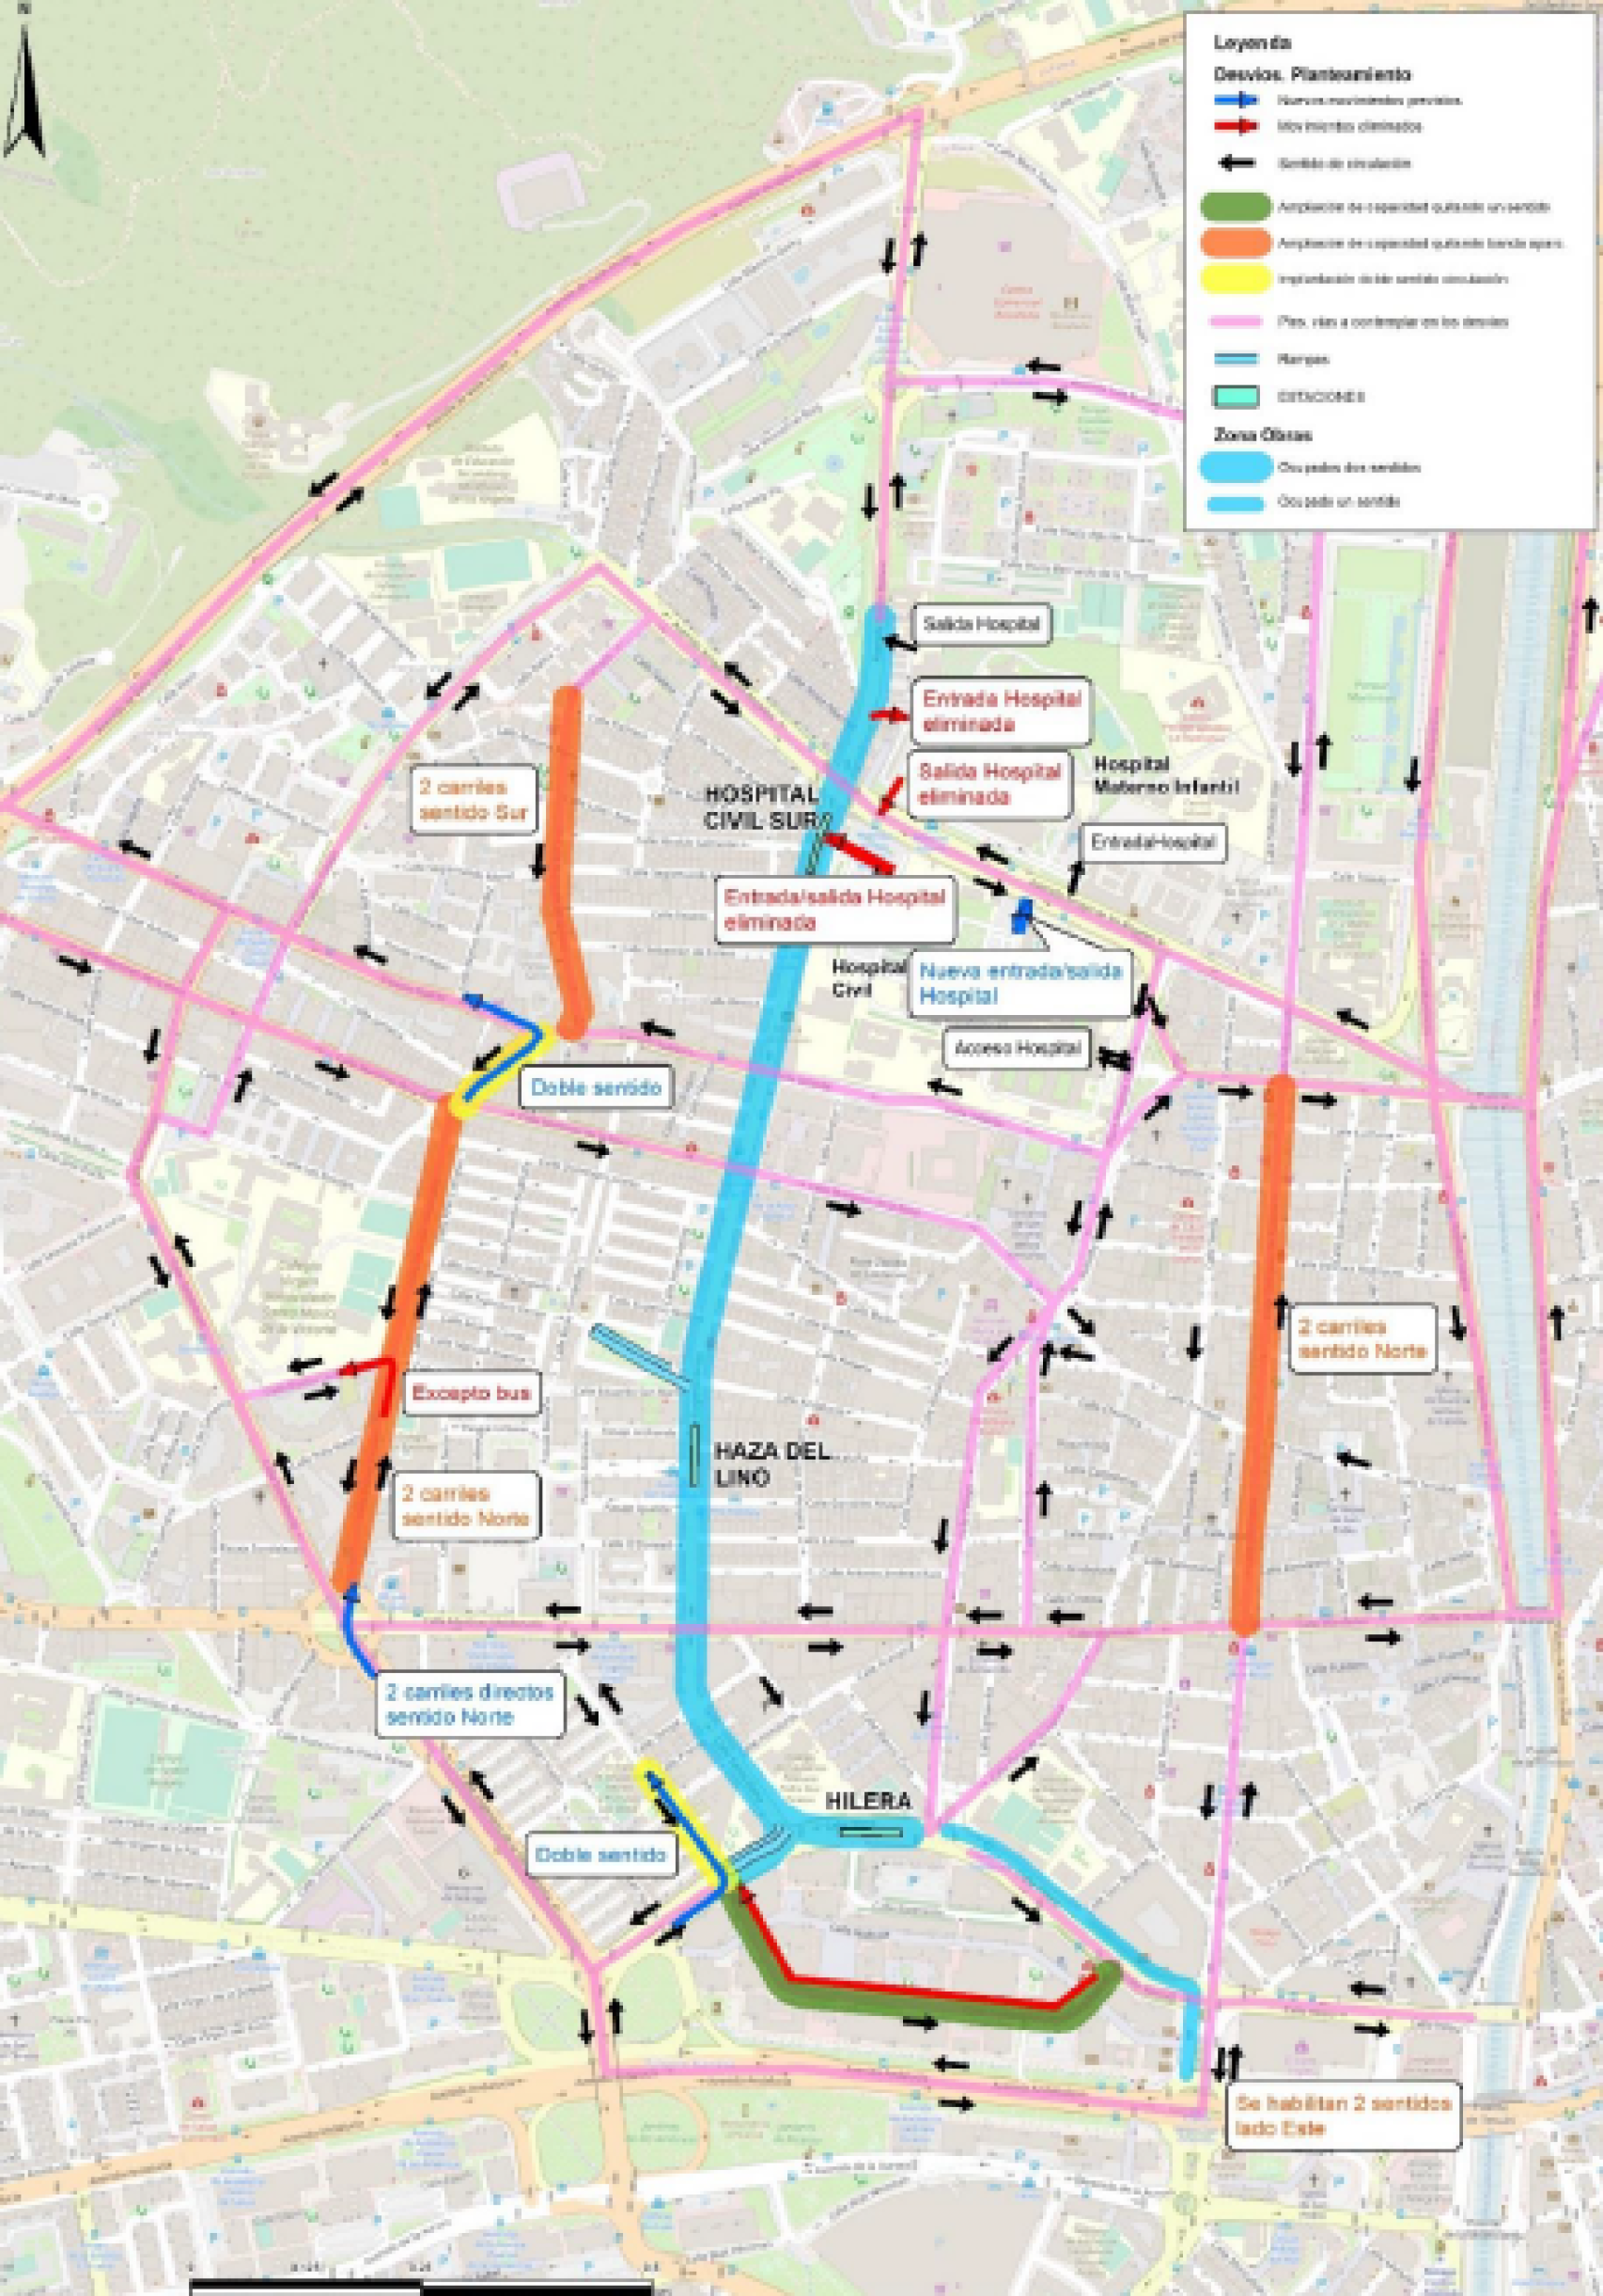 Plano general de los desvíos de tráfico previstos para toda la obra del Metro al Civil.